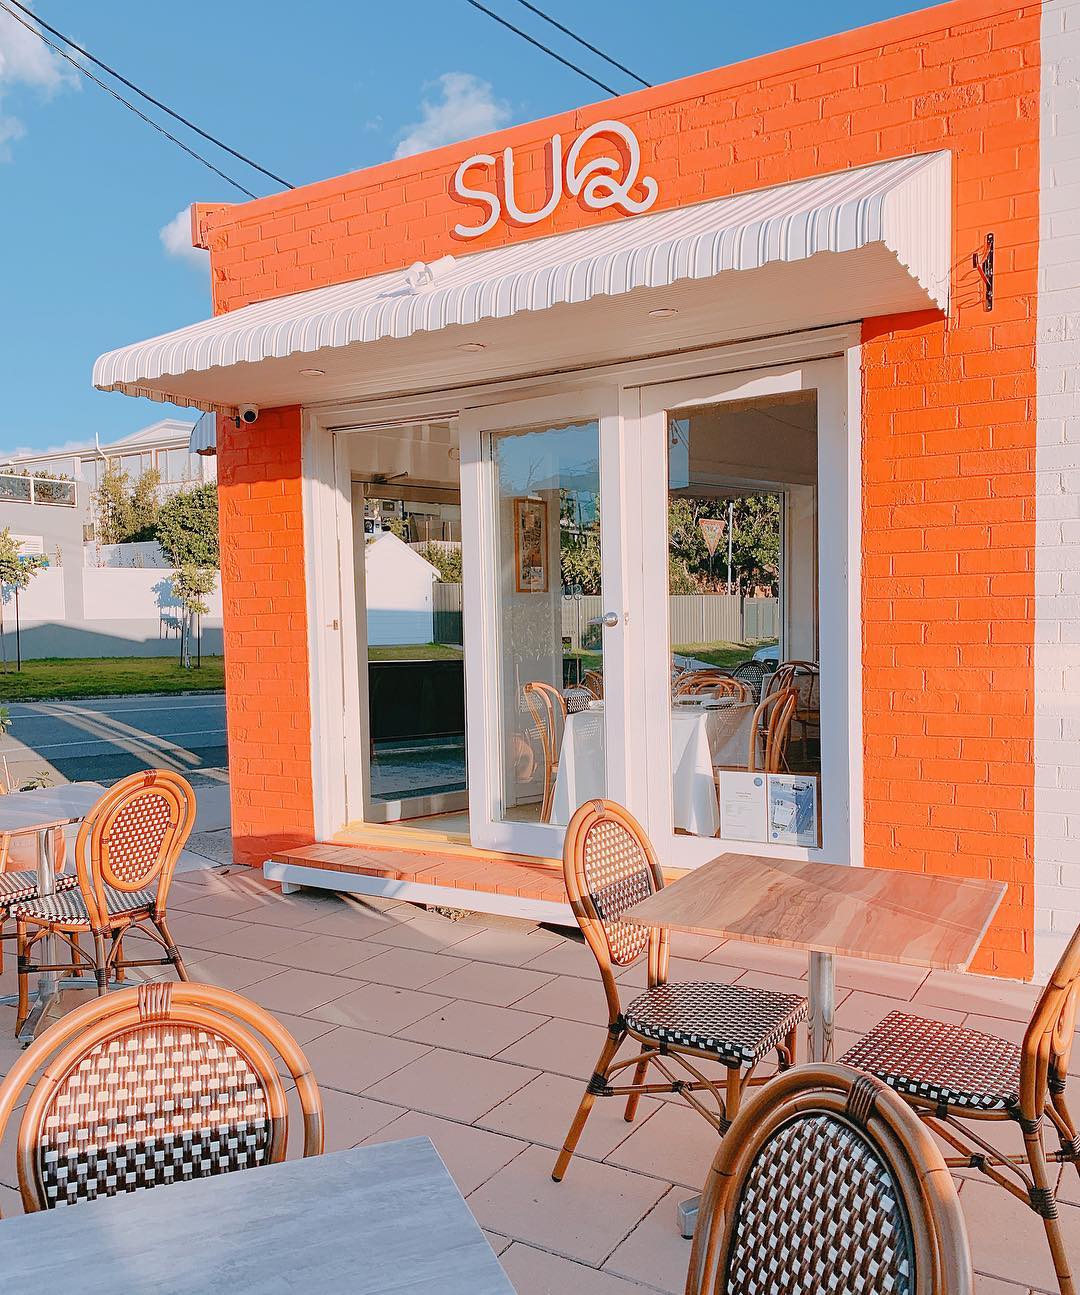 SUQ Restaurant, best date night Central Coast restaurants